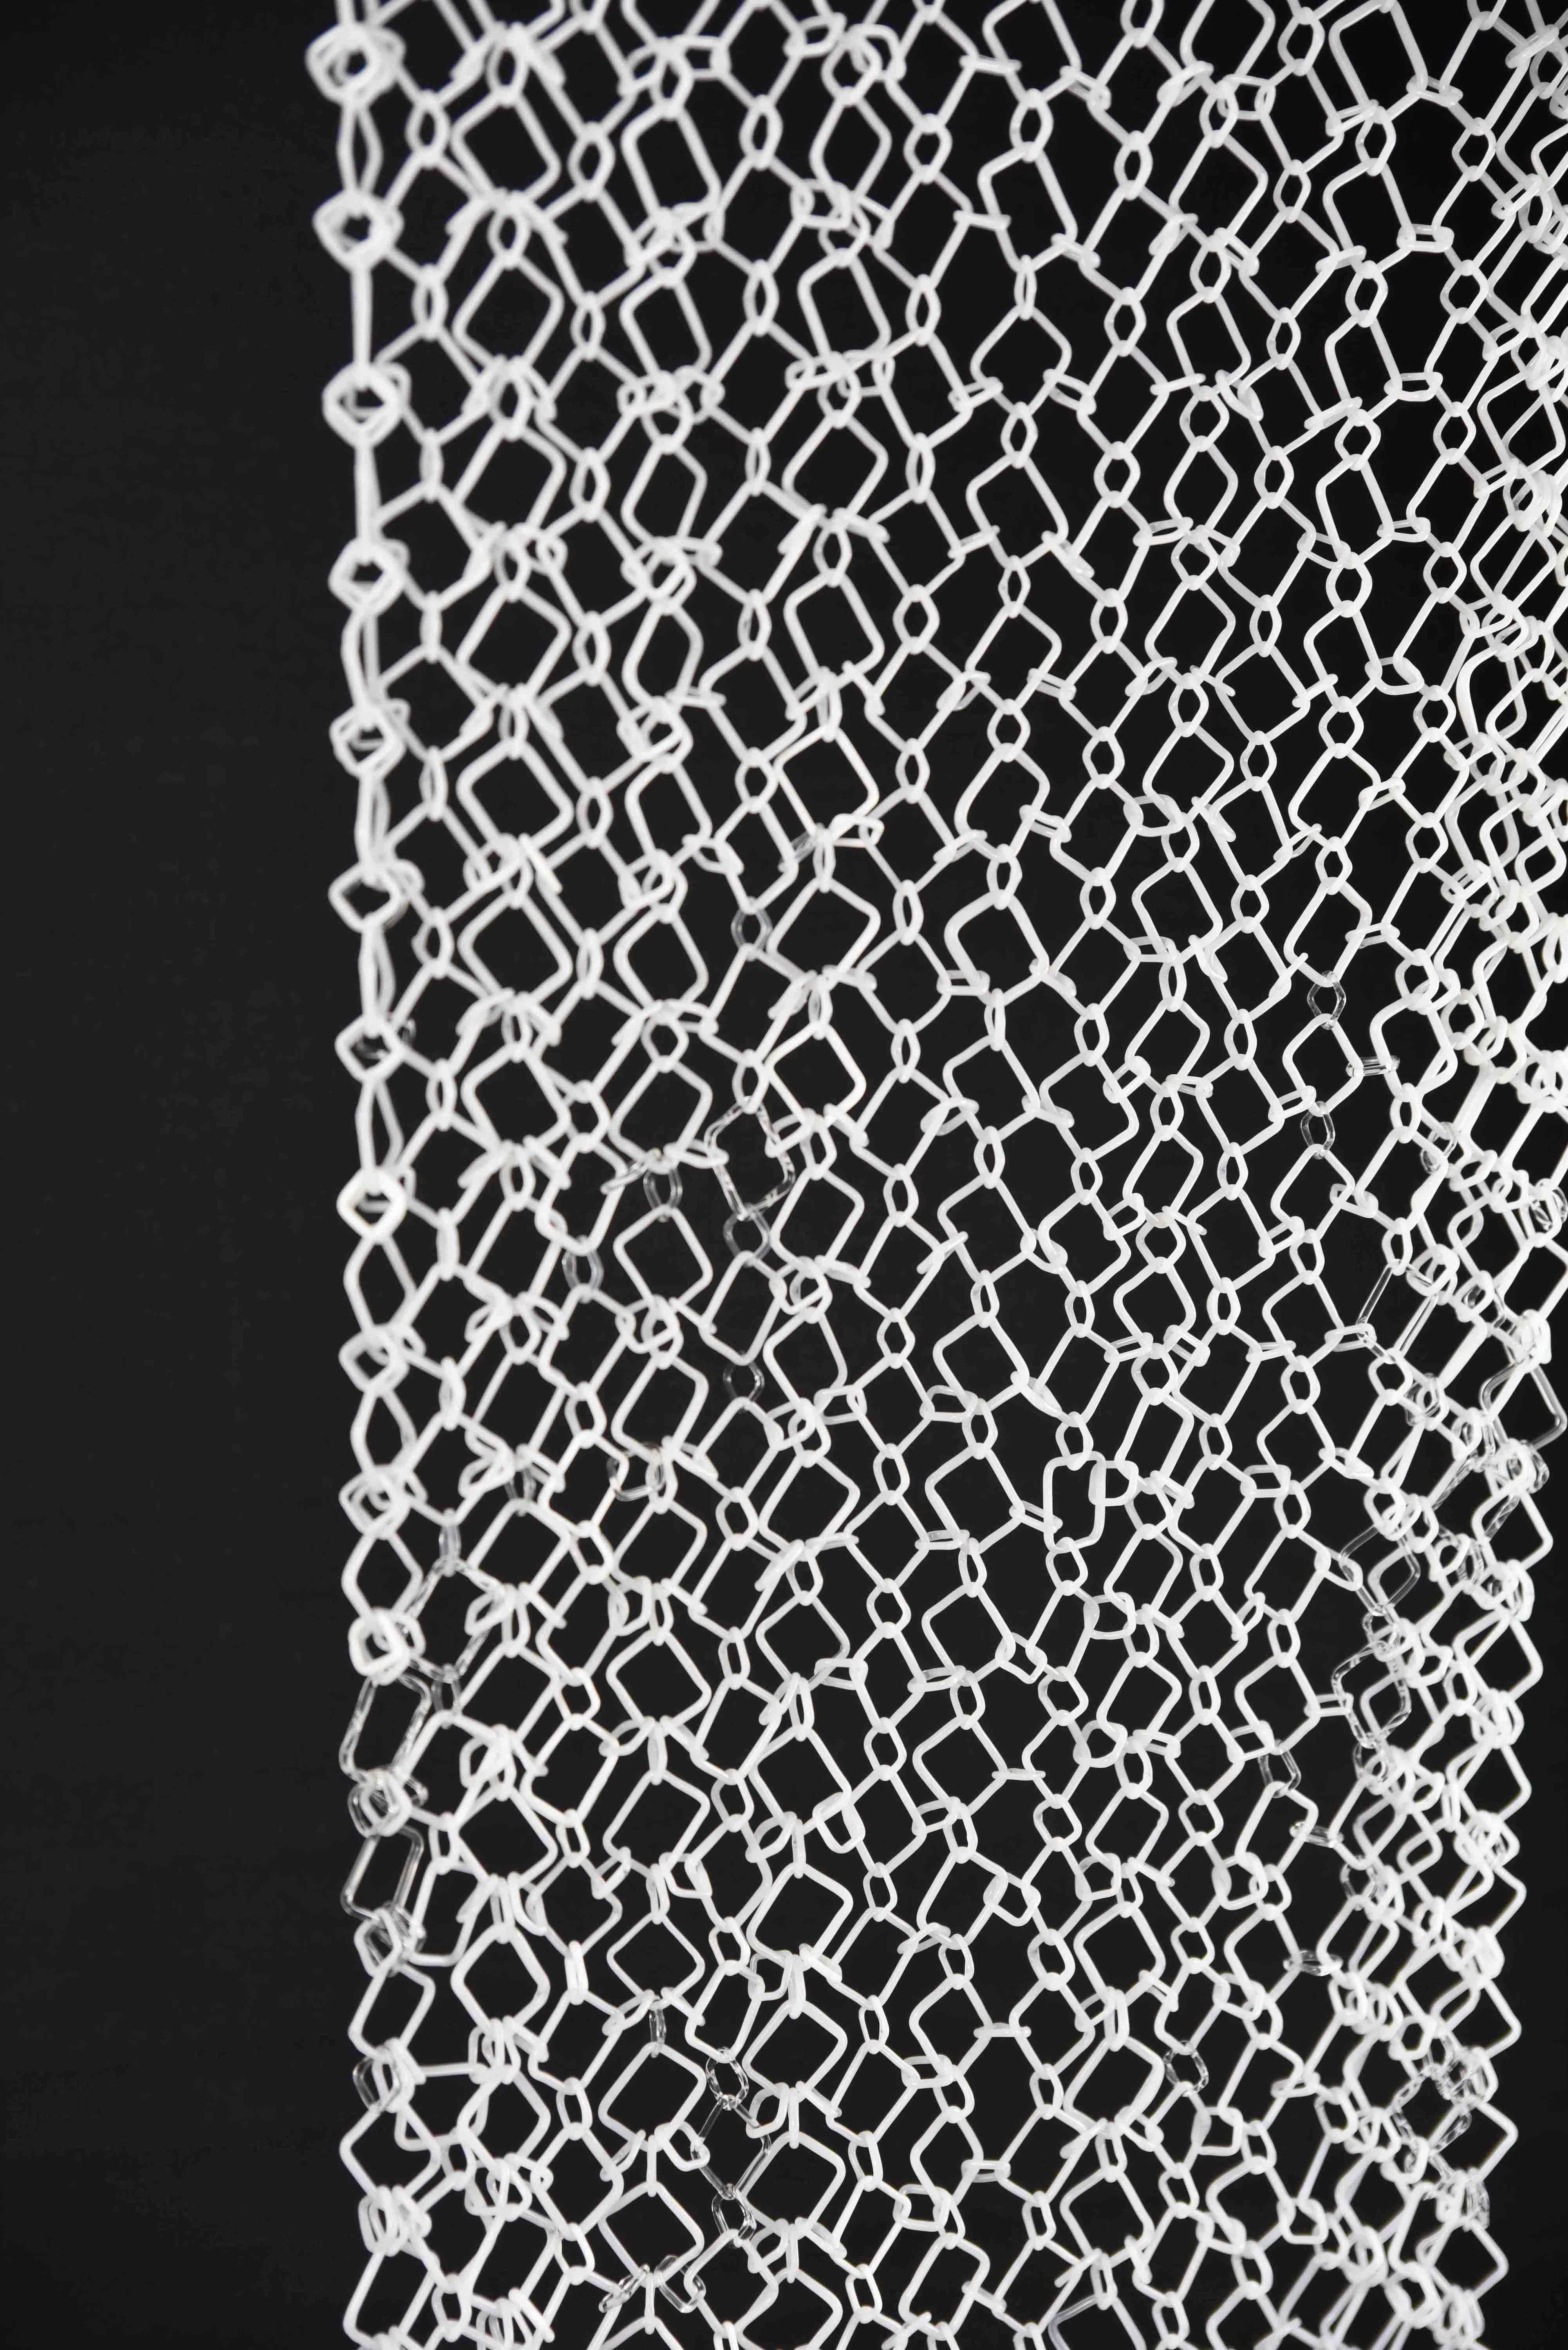 Diese lange, hängende Skulptur von David Licata besteht aus quadratischen Gliedern aus klarem und weißem Borosilikatglas in Fackeltechnik. Die quadratischen Glieder sind in einem japanischen Vier-zu-Eins-Kettengeflecht zusammengefügt und fallen